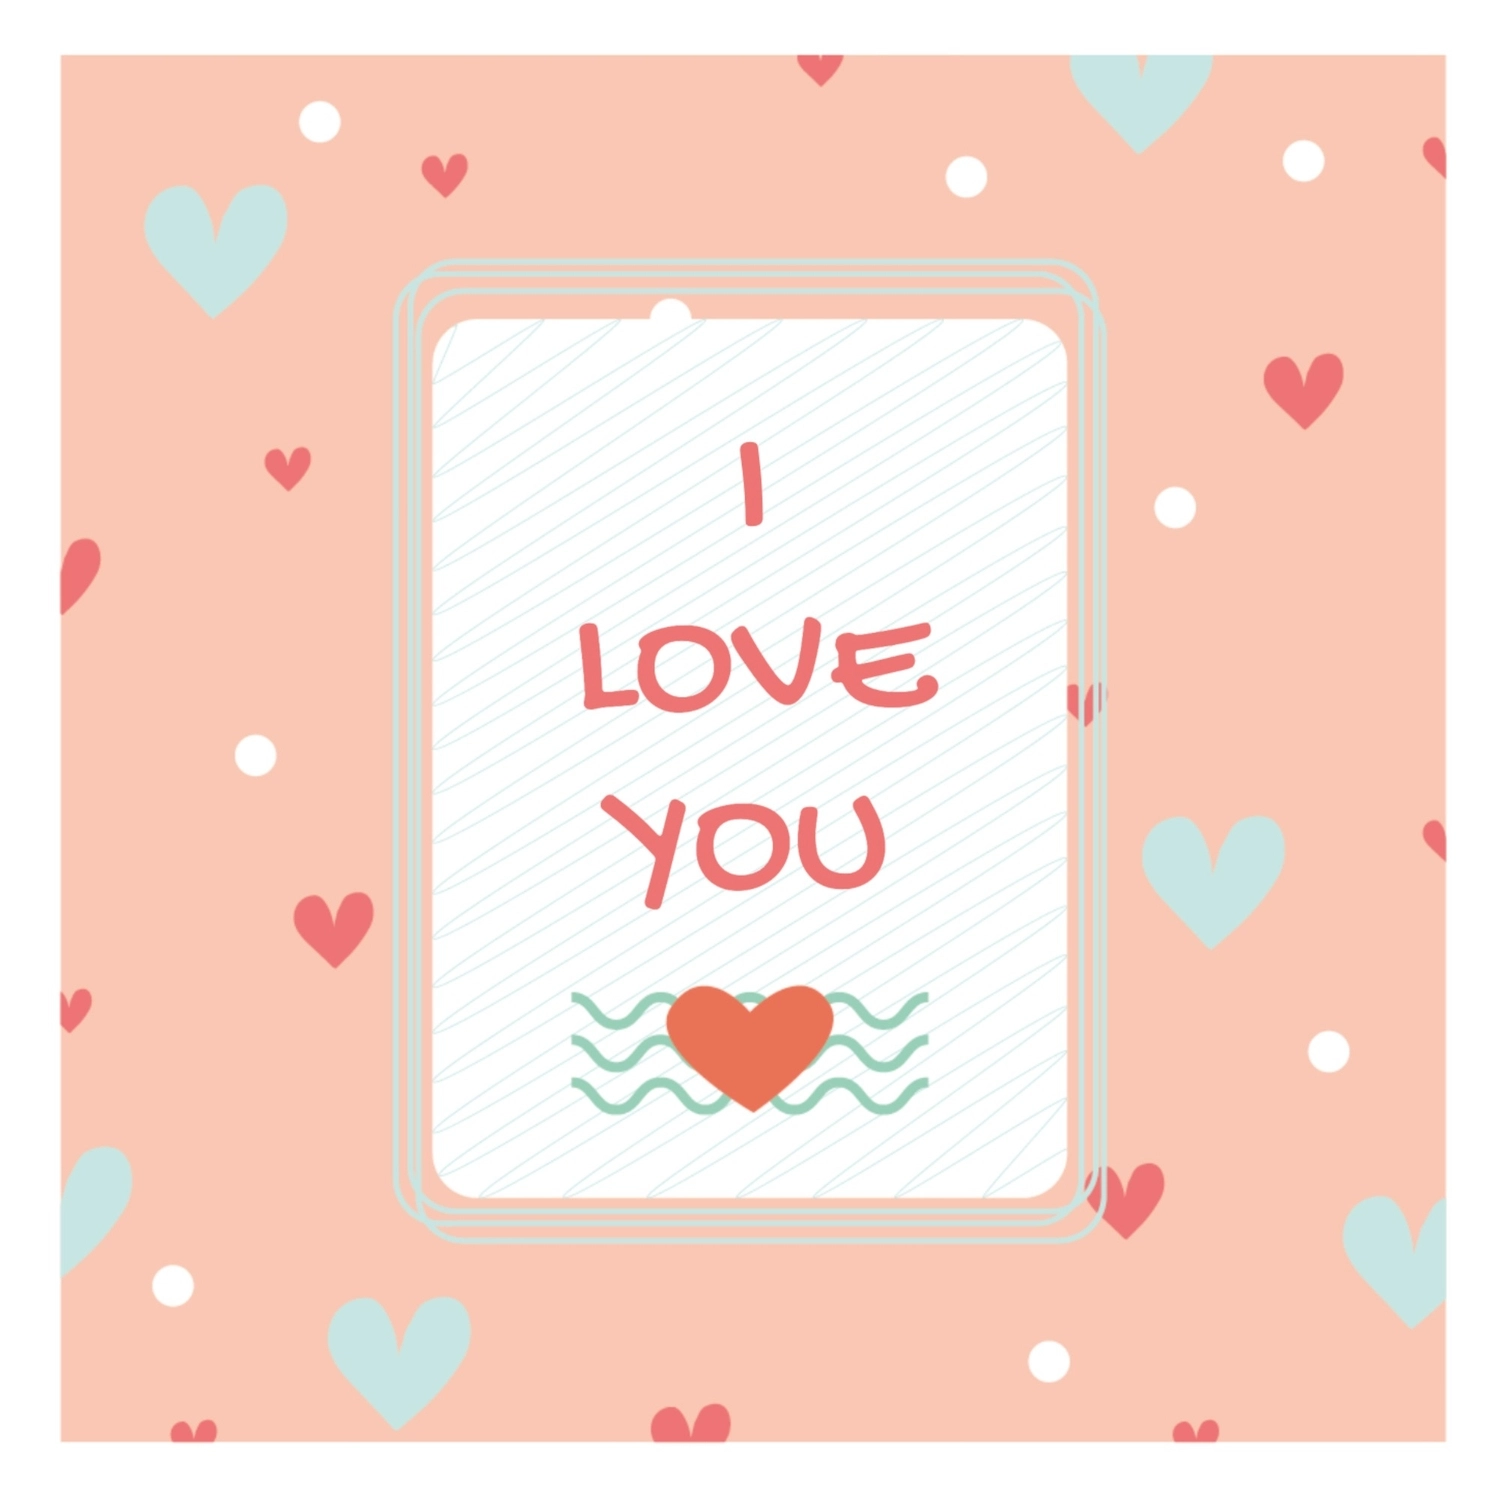 バレンタインデーグリーティングカード　アイラブユー, heart, create, design, message card template